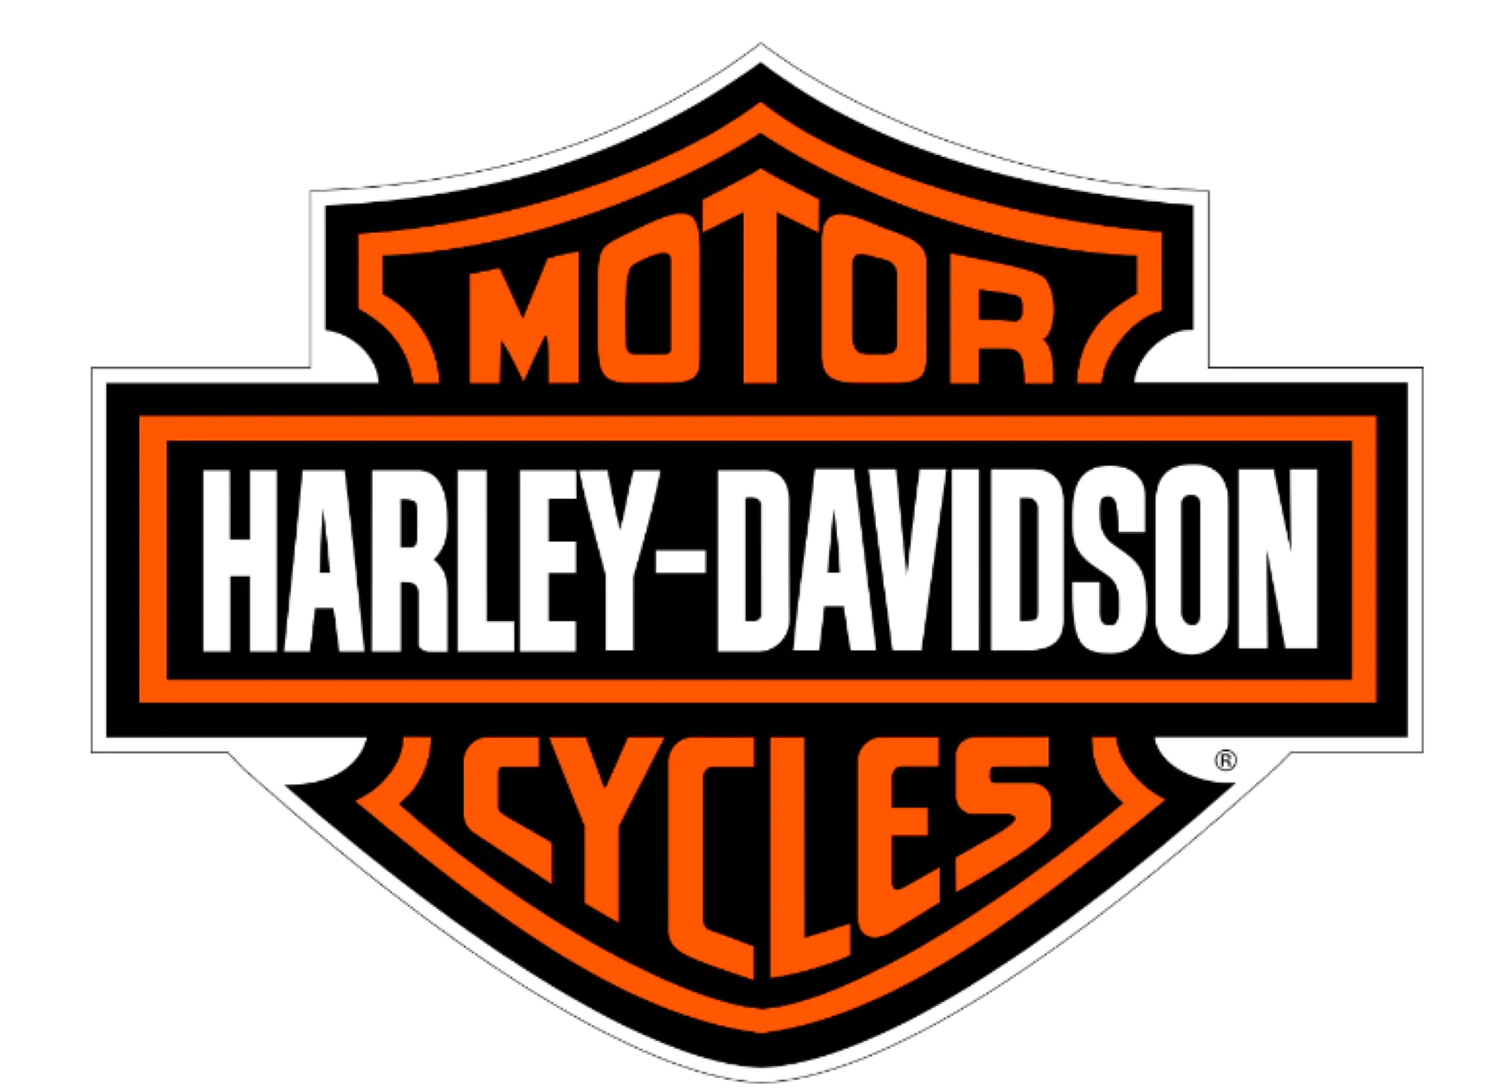 Gezeigt ist das Logo von Harley-Davidson.